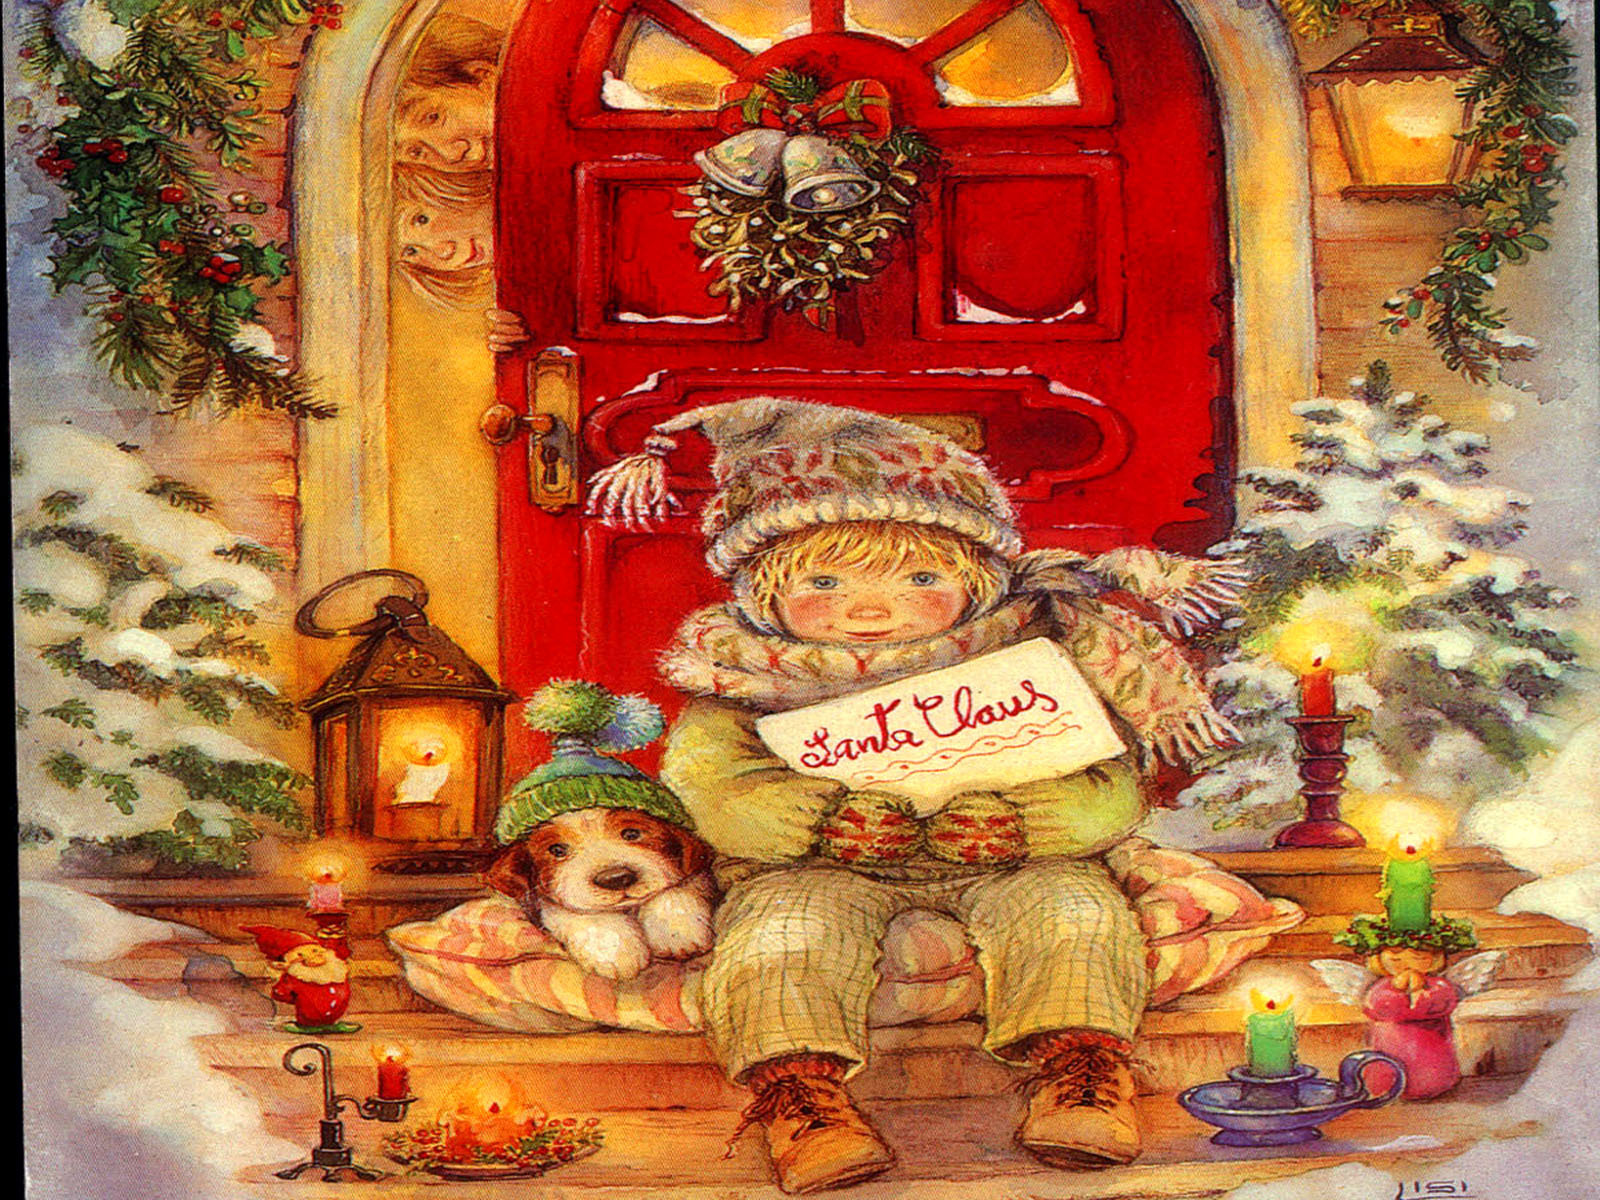 Christmas wallpaper - Christmas Wallpaper (9330858) - Fanpop